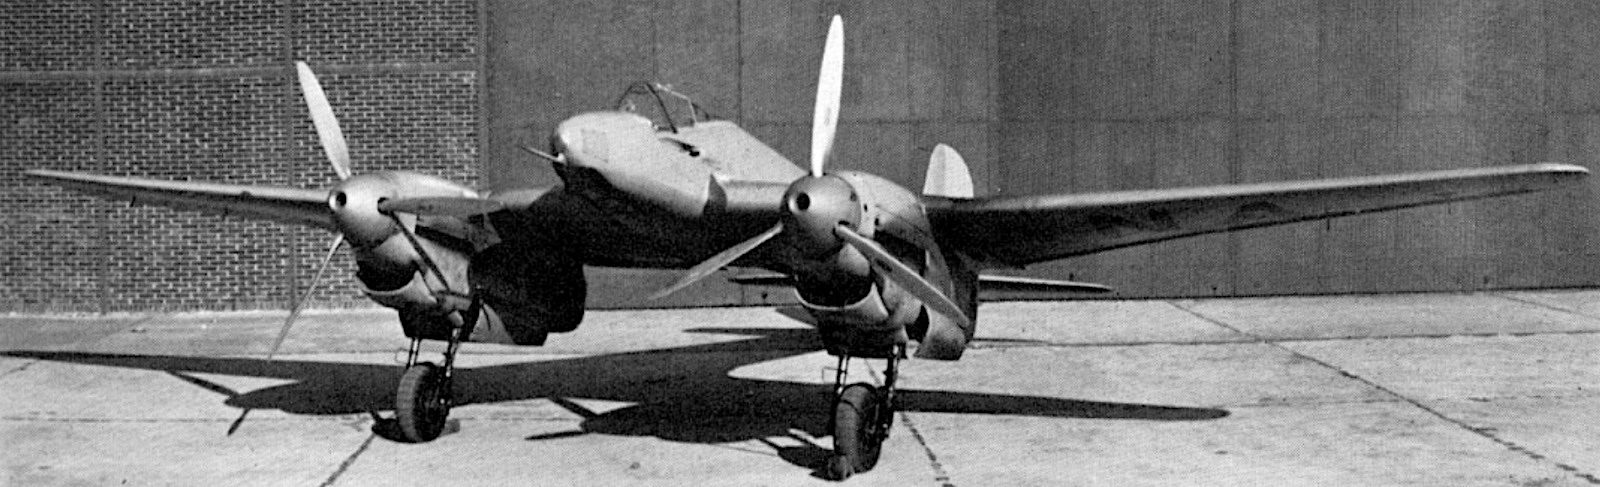 Fw-187-8